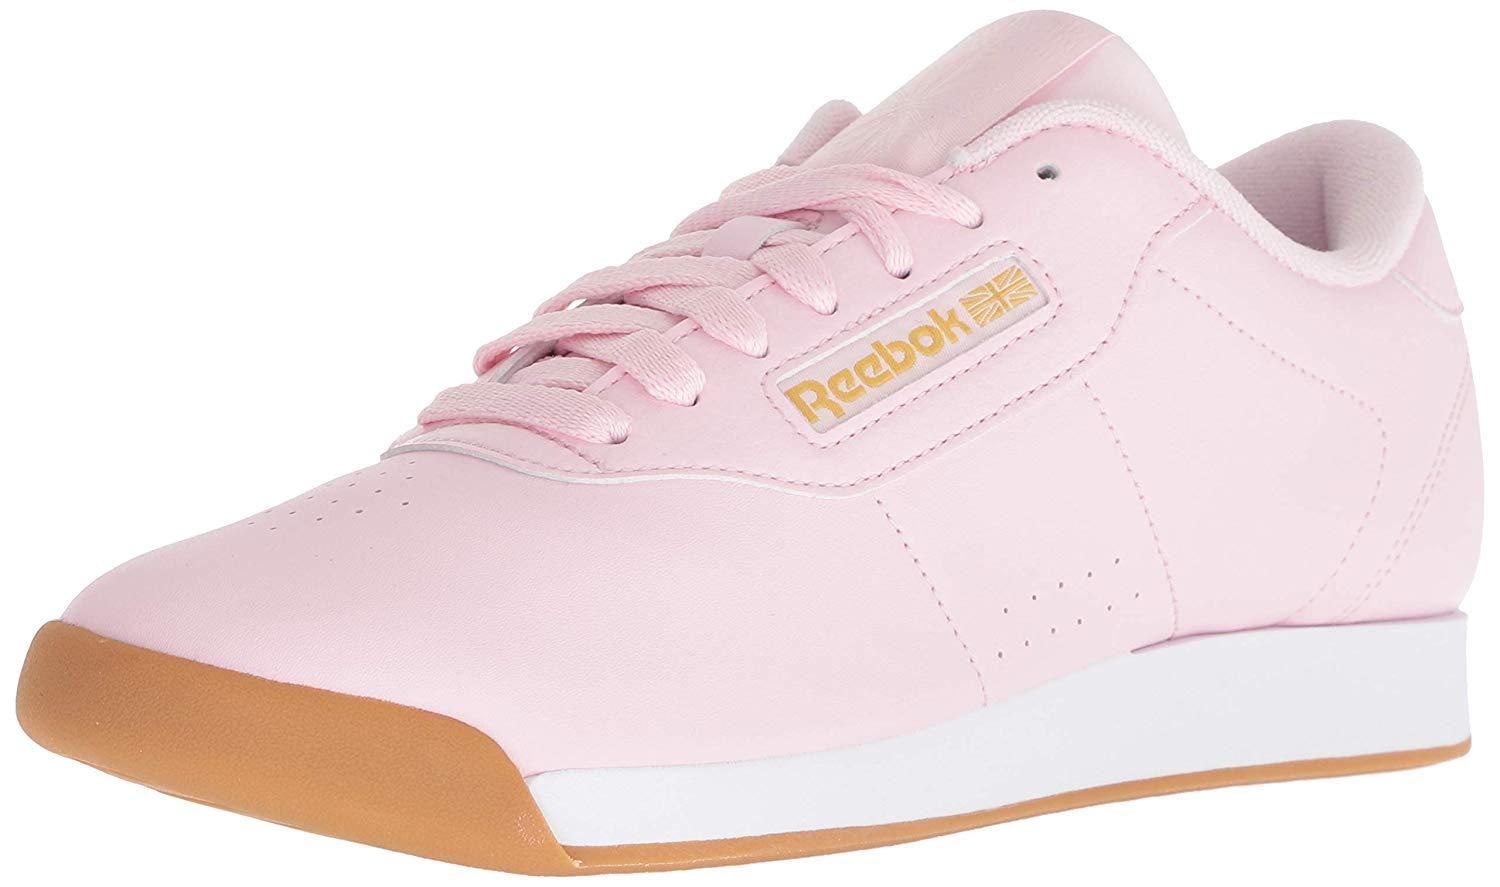 Reebok Princess Sneaker in Pink/White/Gold Metallic (Pink) - Save 52% - Lyst